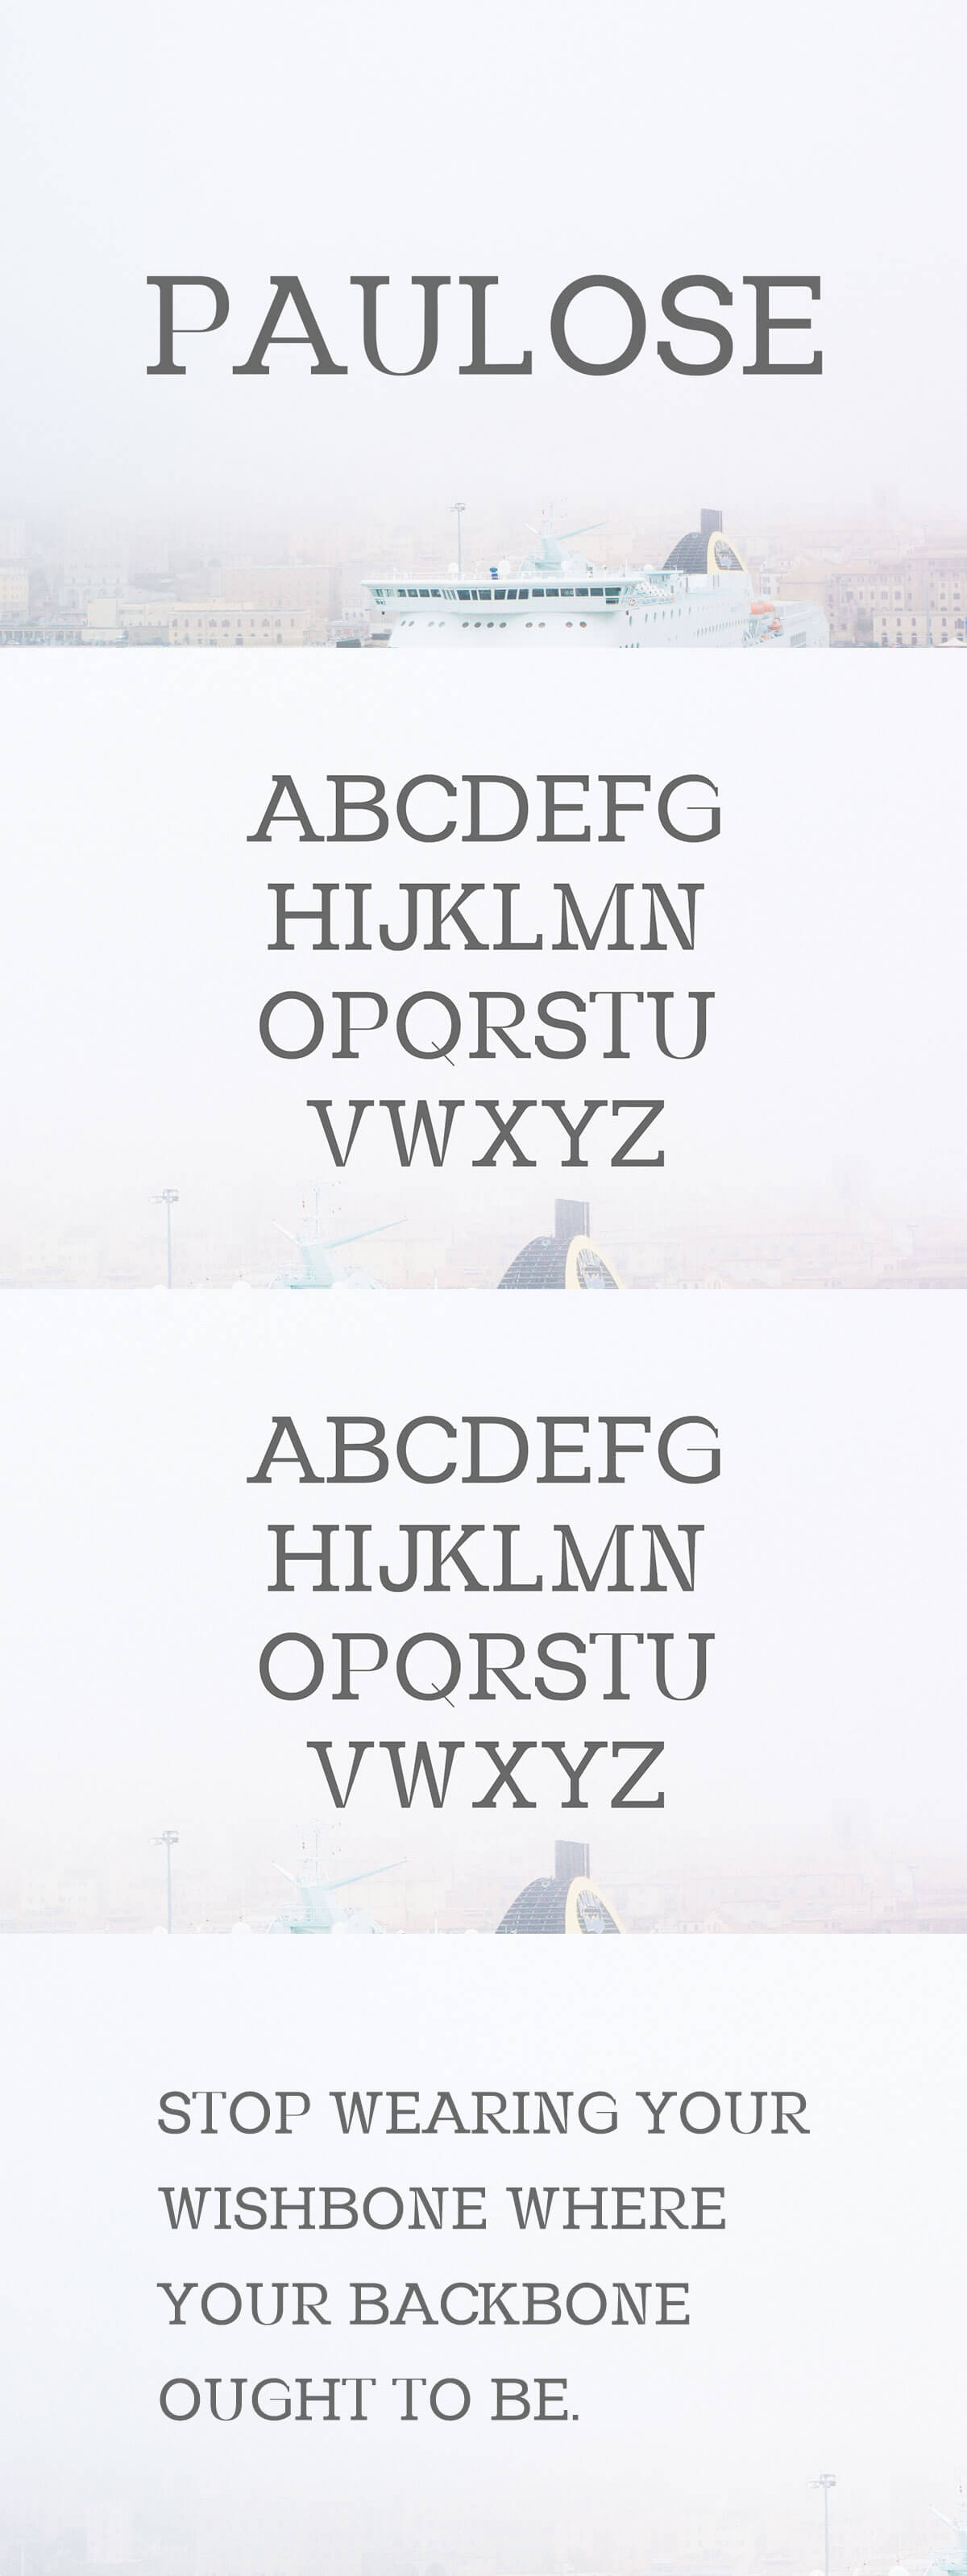 Free Paulose Modern Serif Font